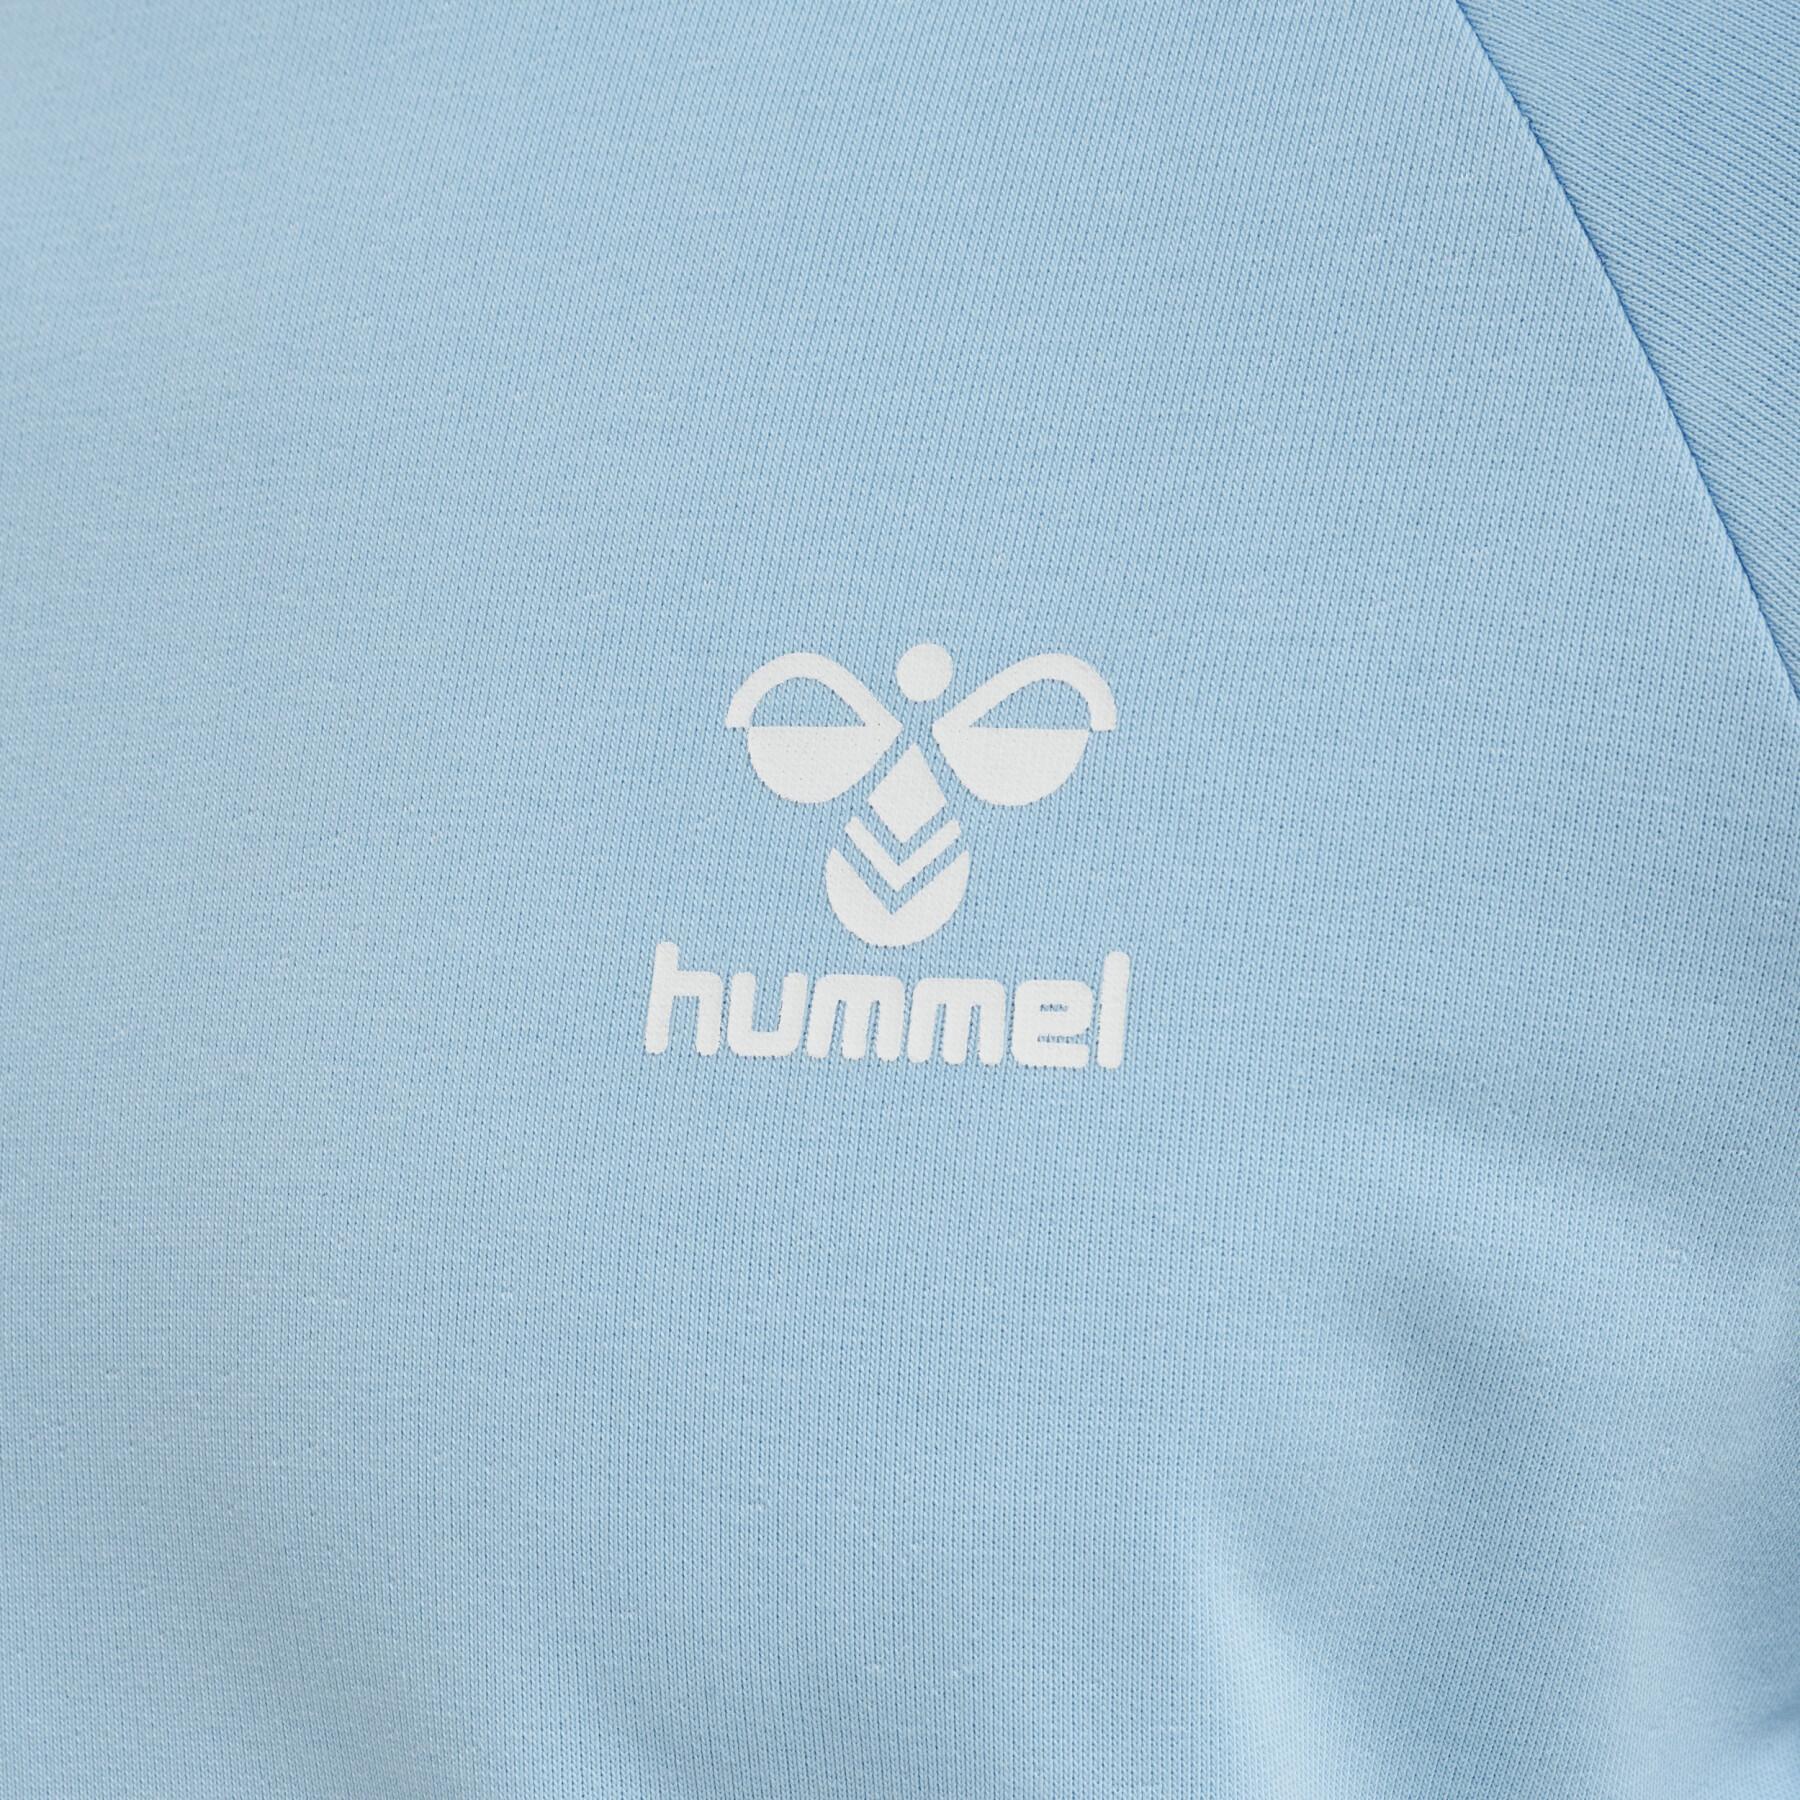 Sweatshirt Hummel Isam 2.0